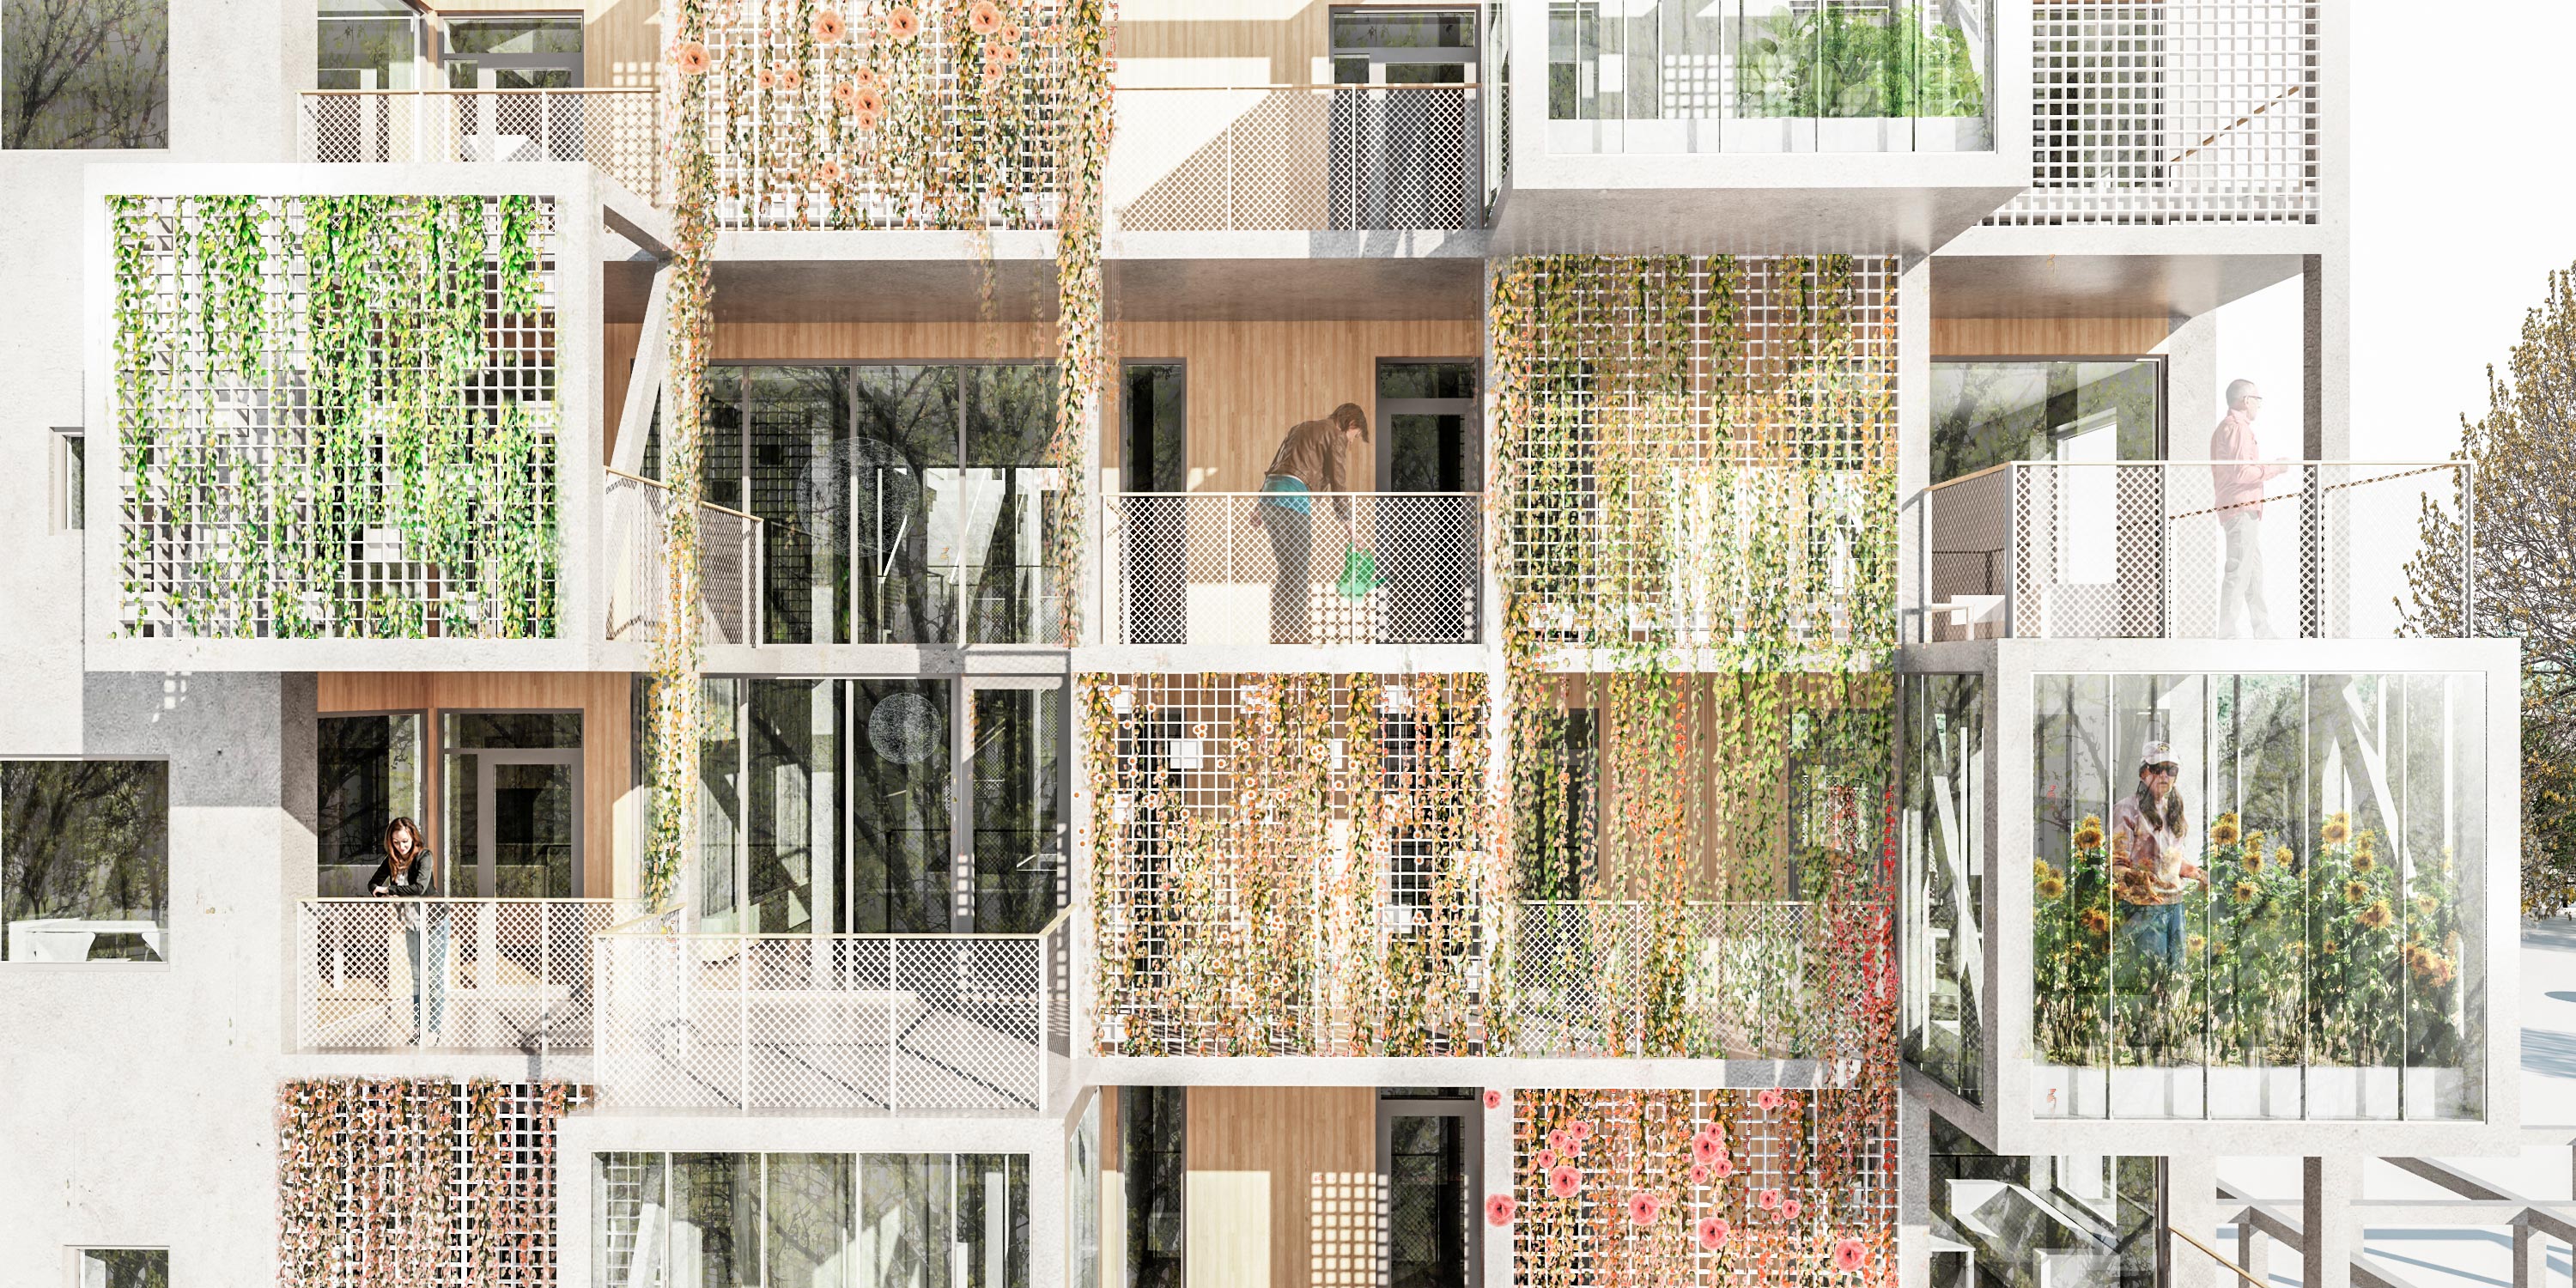 Fremtidens bæredygtige almene bolig - facadestruktur